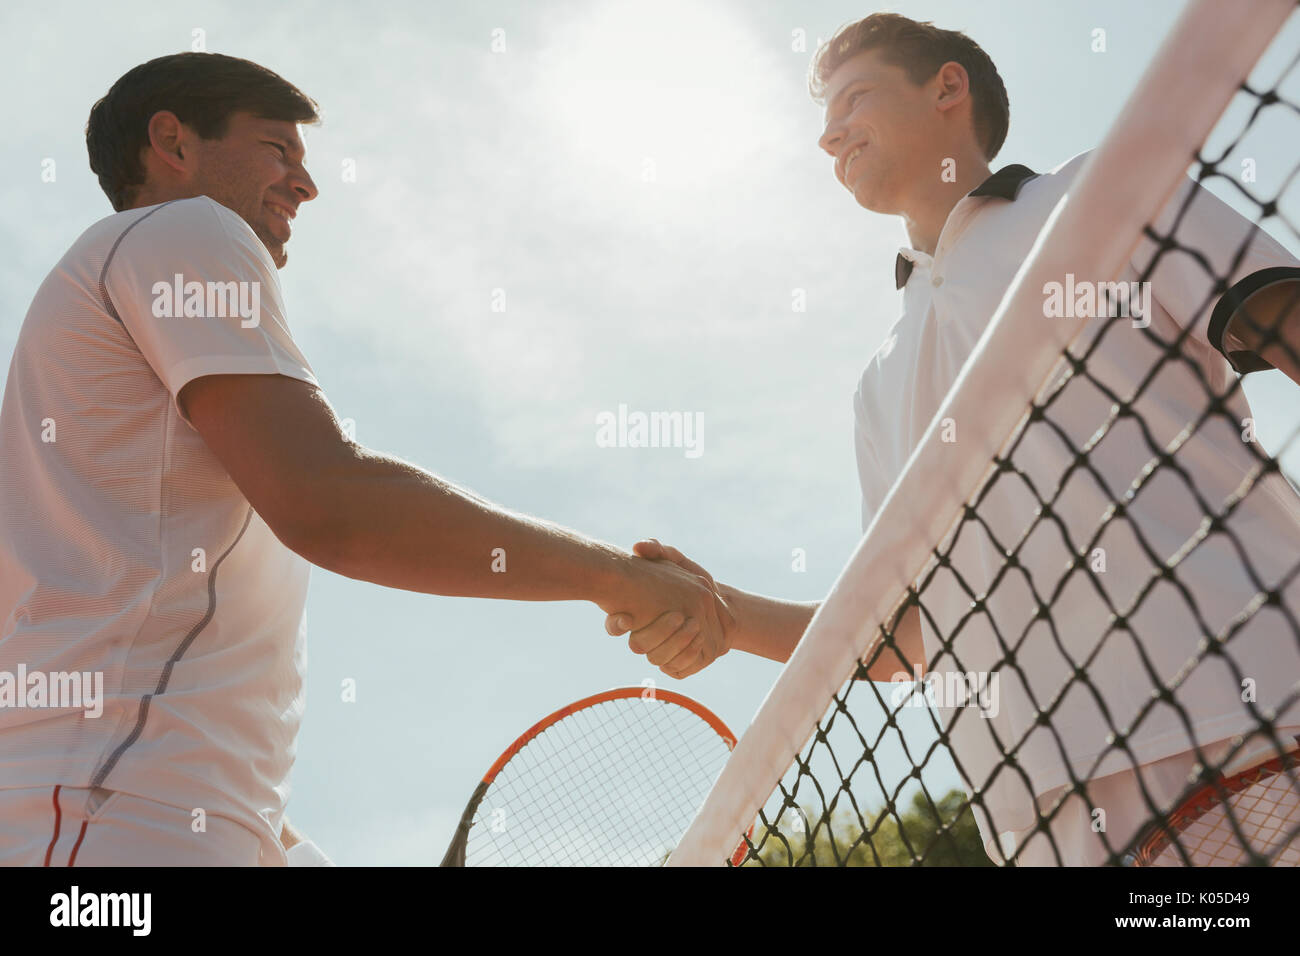 Les jeunes joueurs de tennis handshaking in esprit sportif au filet Banque D'Images